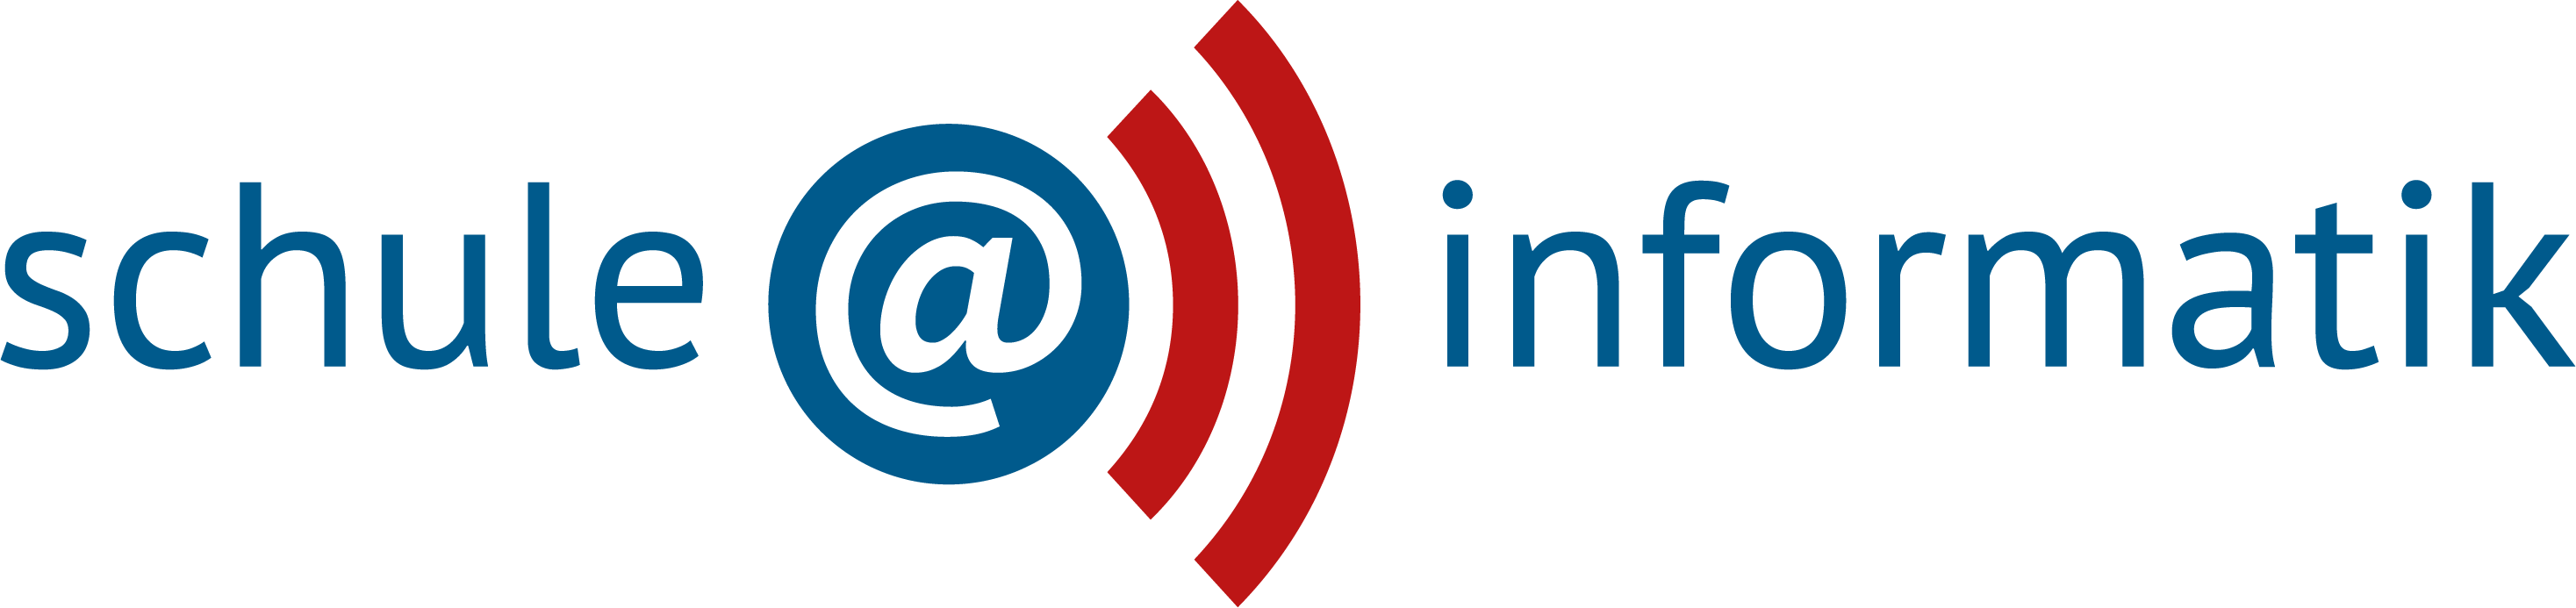 Schule@Informatik Logo